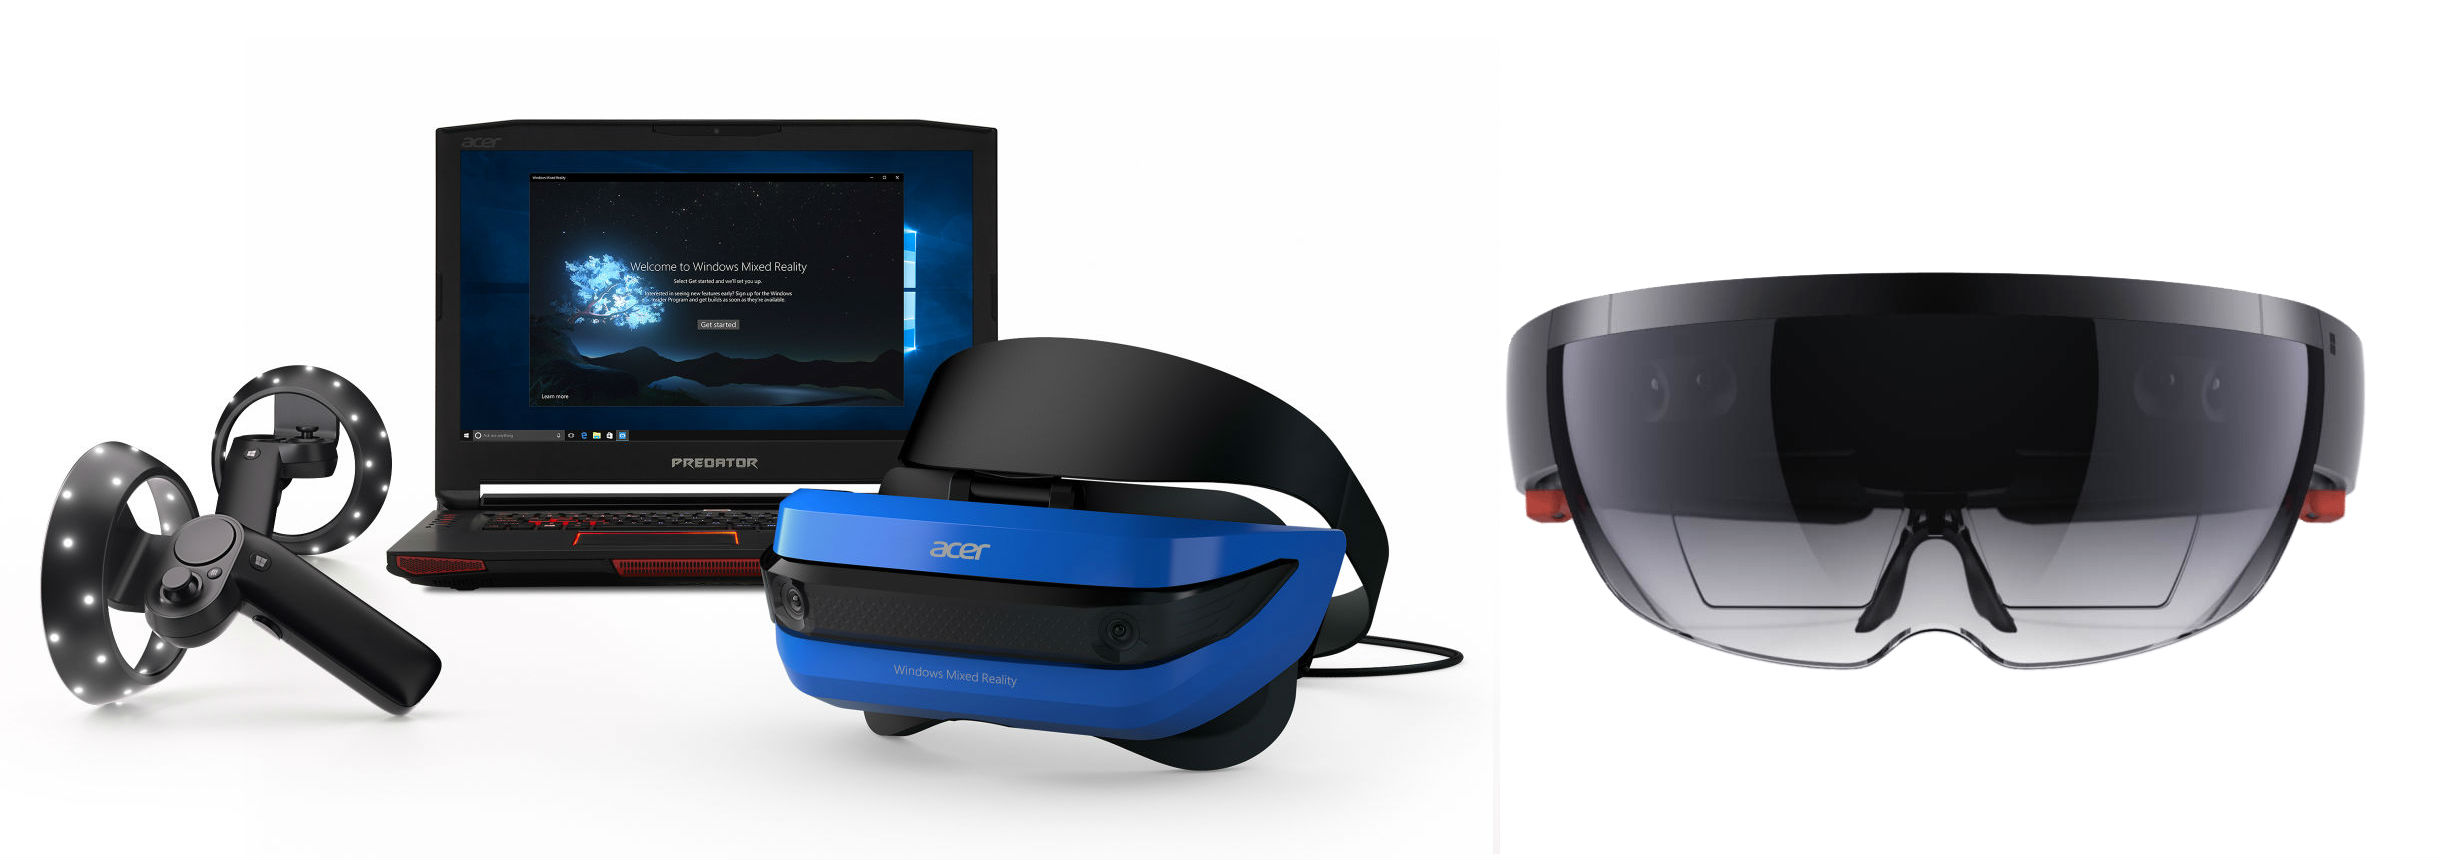 微软与343工作室合作 光环VR将登陆微软MR平台